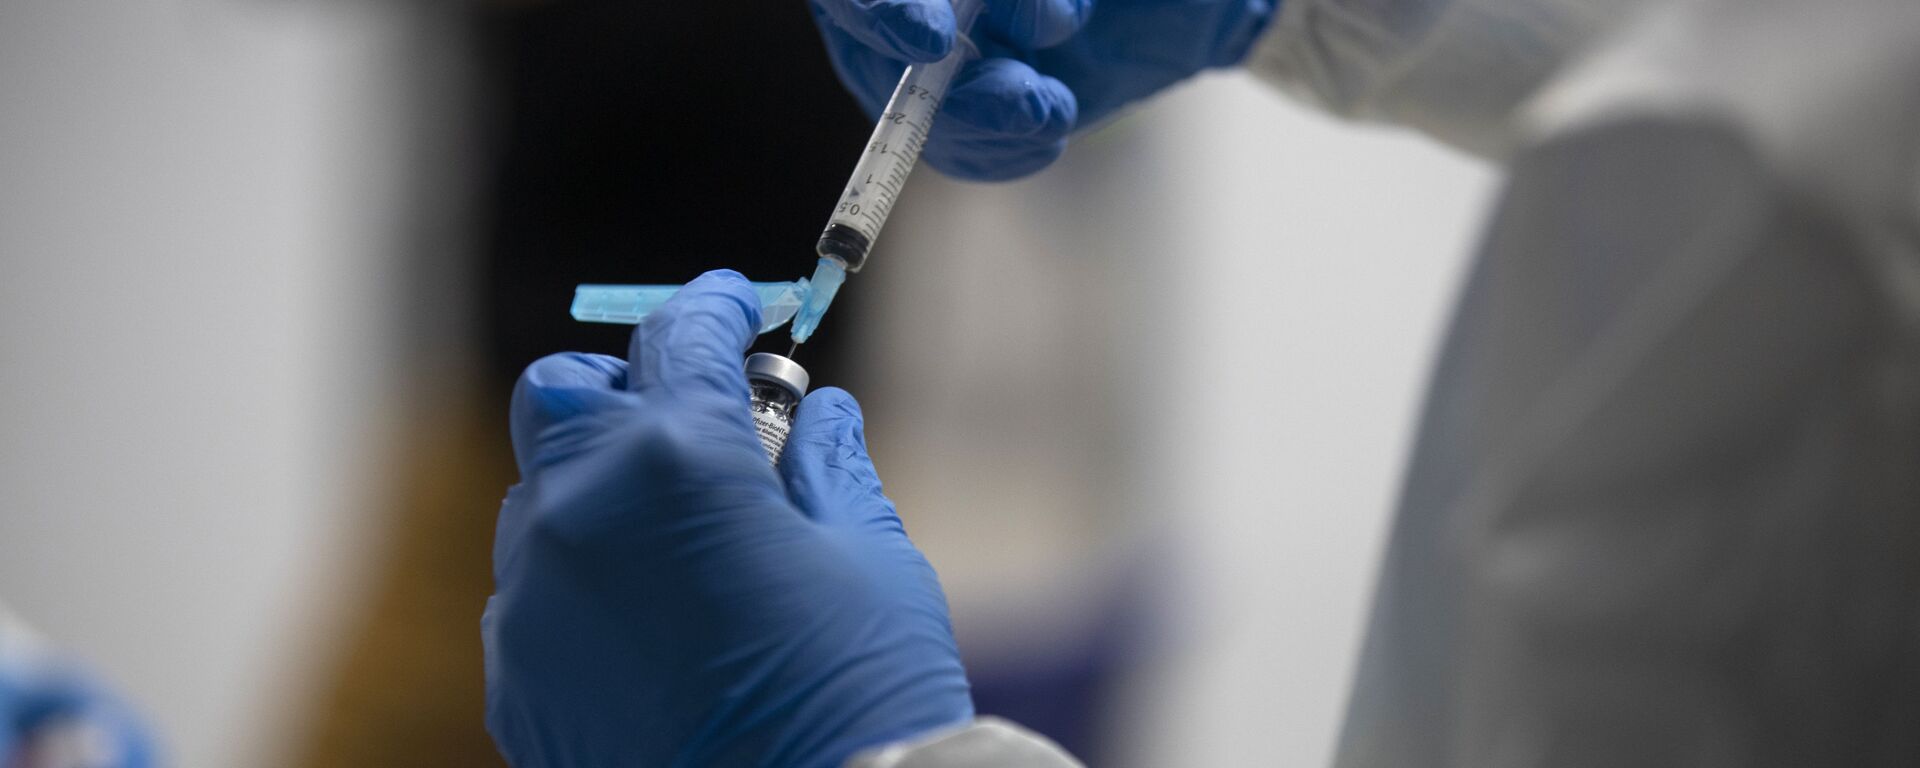 Un trabajador de la salud prepara la vacuna Pfizer-BioNTech COVID-19. España, 12 de enero de 2021 - Sputnik Mundo, 1920, 15.01.2021